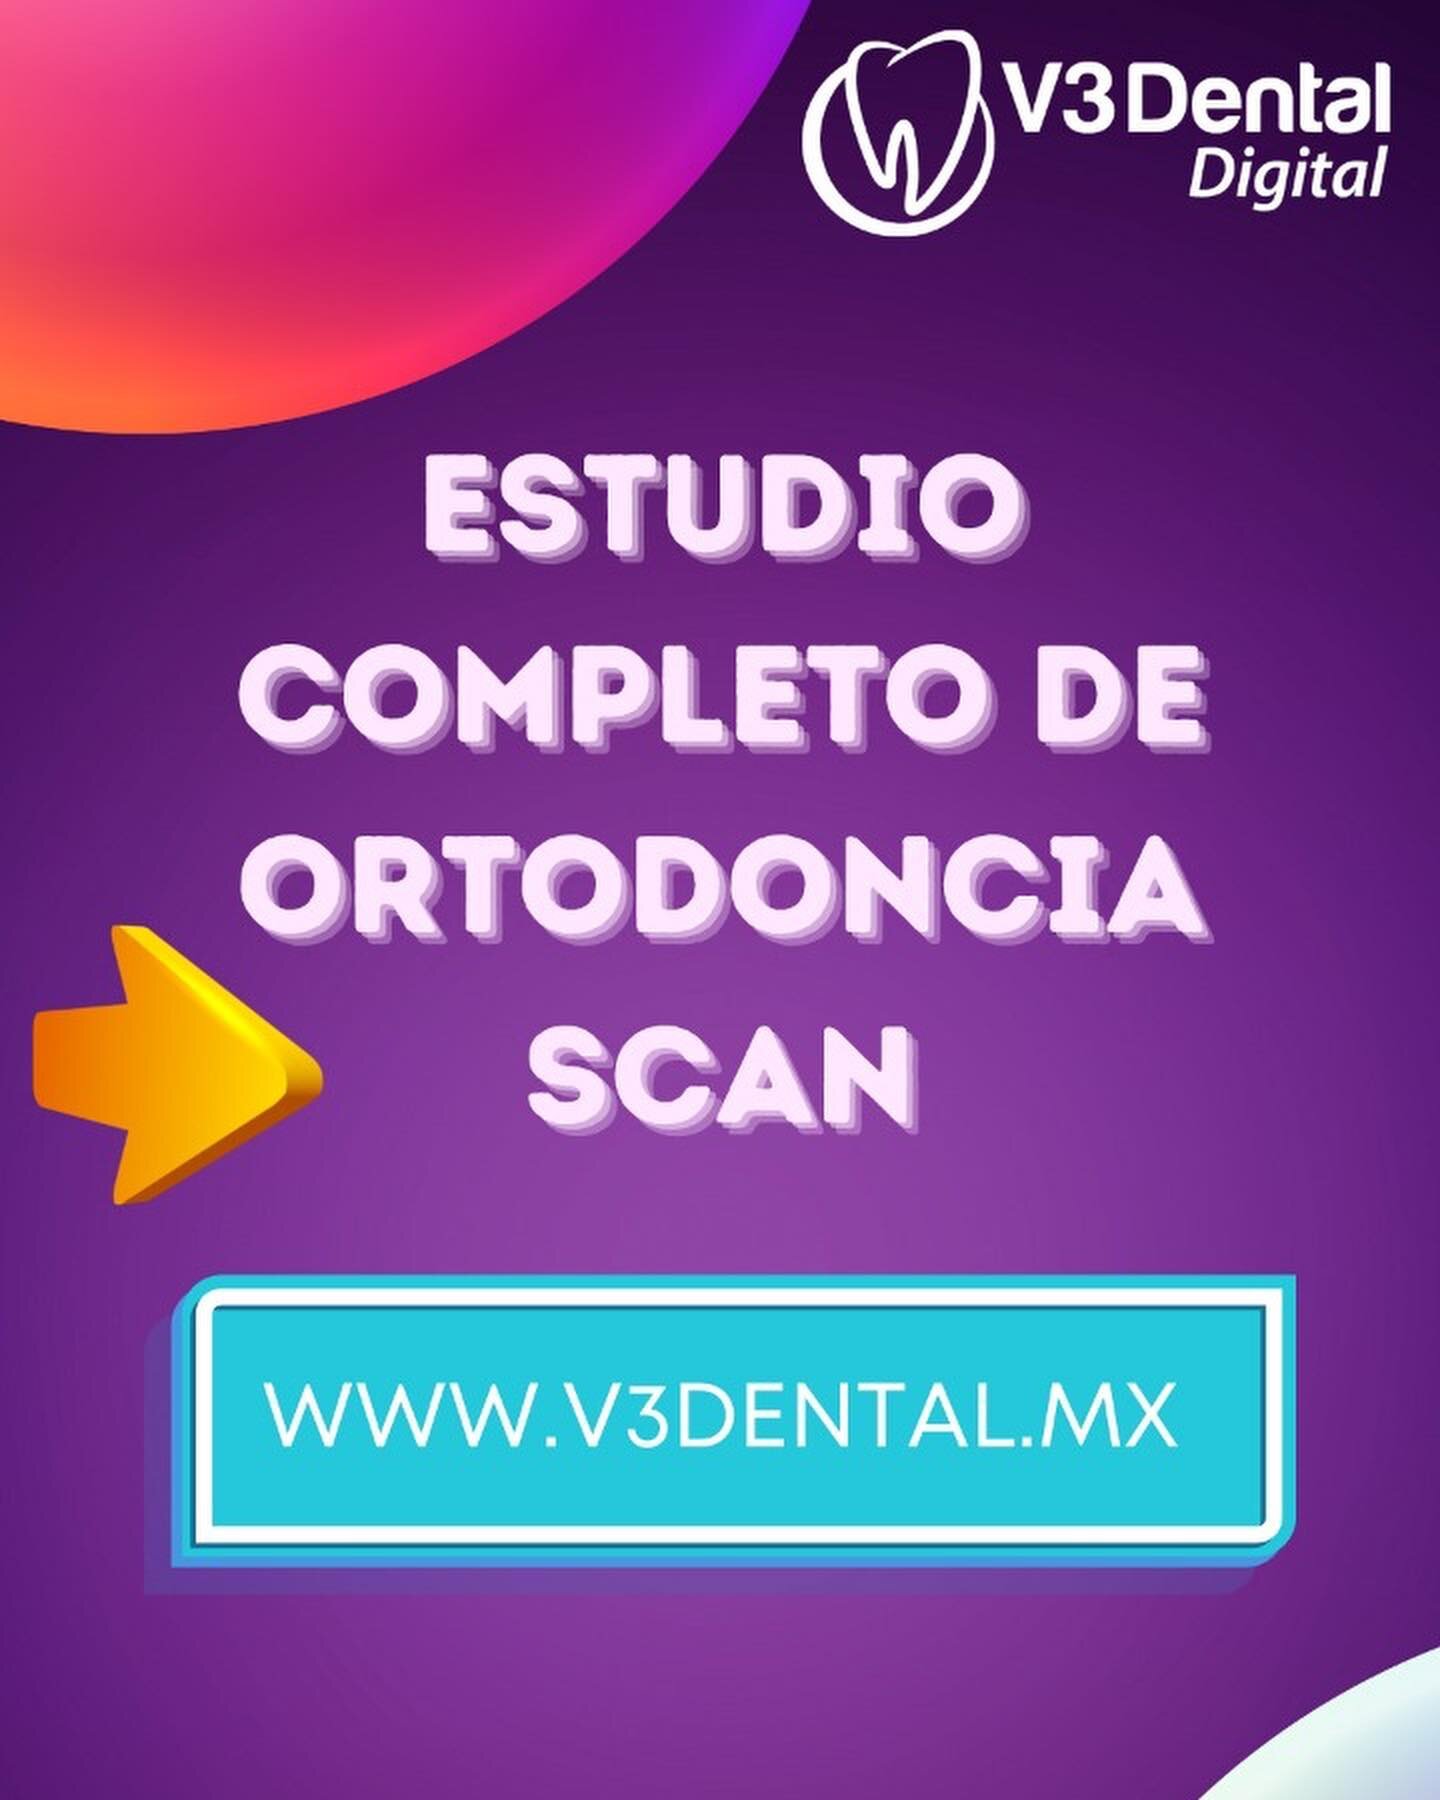 Introducimos los nuevos modelos 3D de V3Dental digital
Presentamo el nuevo Estudio Completo de Ortodoncia Digital Scan que incluye:  el escaneo virtual de los modelos en 3D archivo STL 

Asimismo ahora puedes solicitar &uacute;nicamente los modelos d